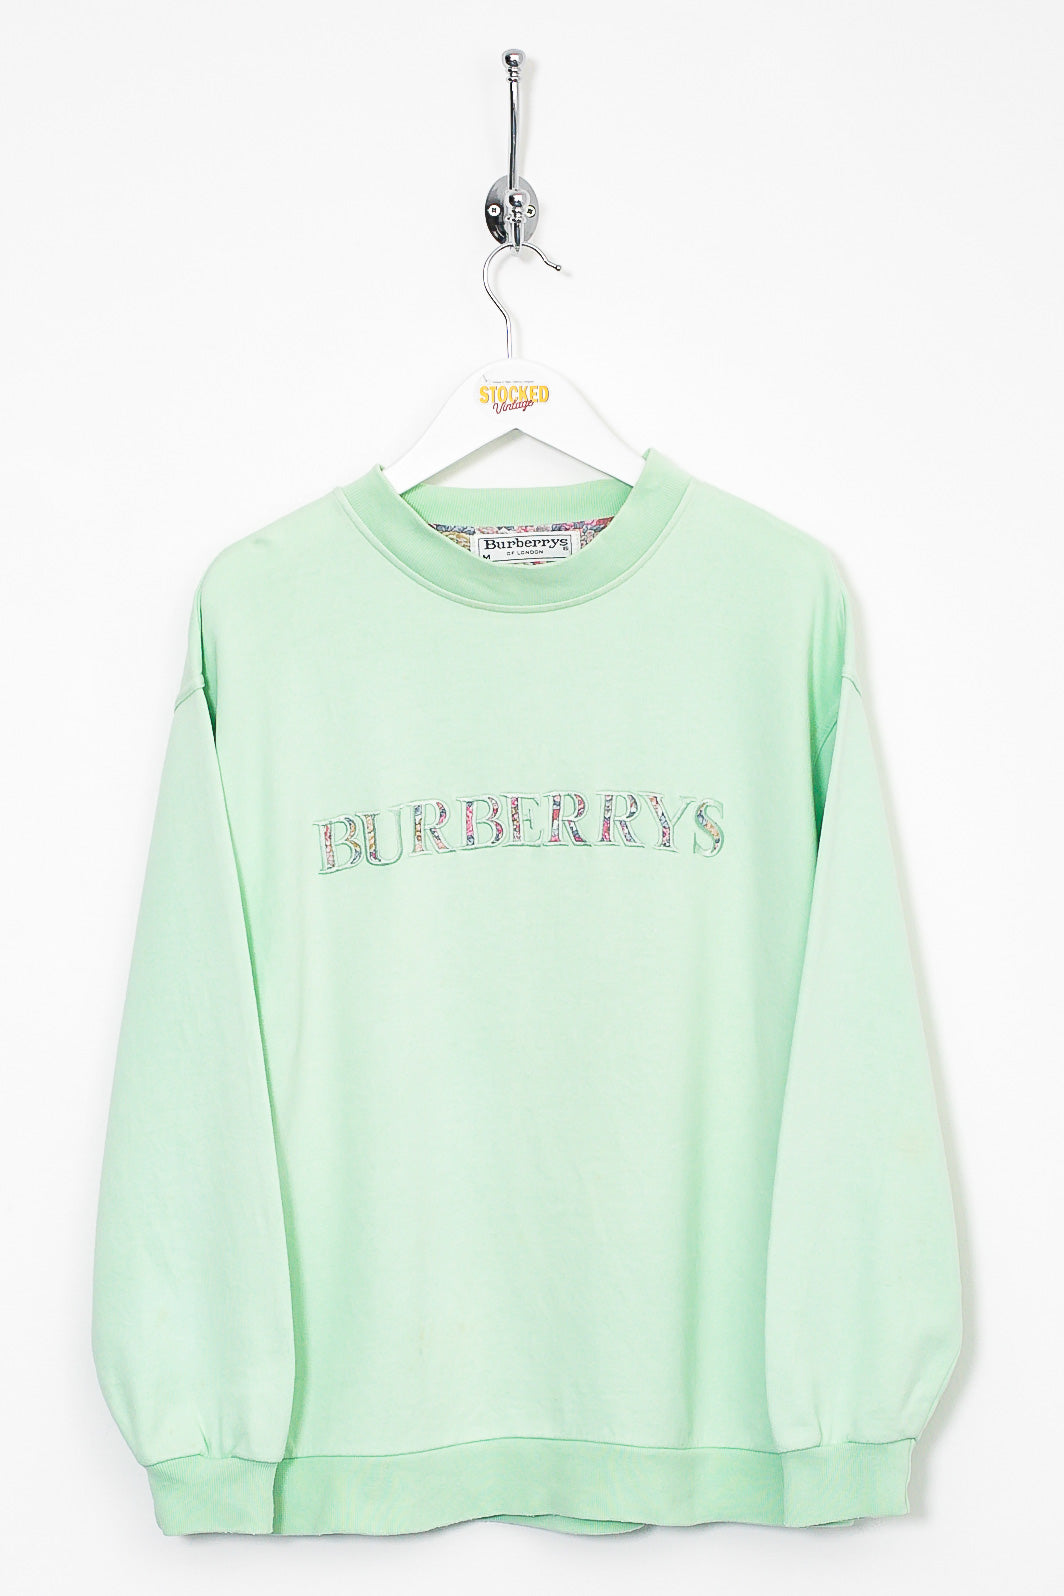 Womens 90s Burberry Sweatshirt (M)